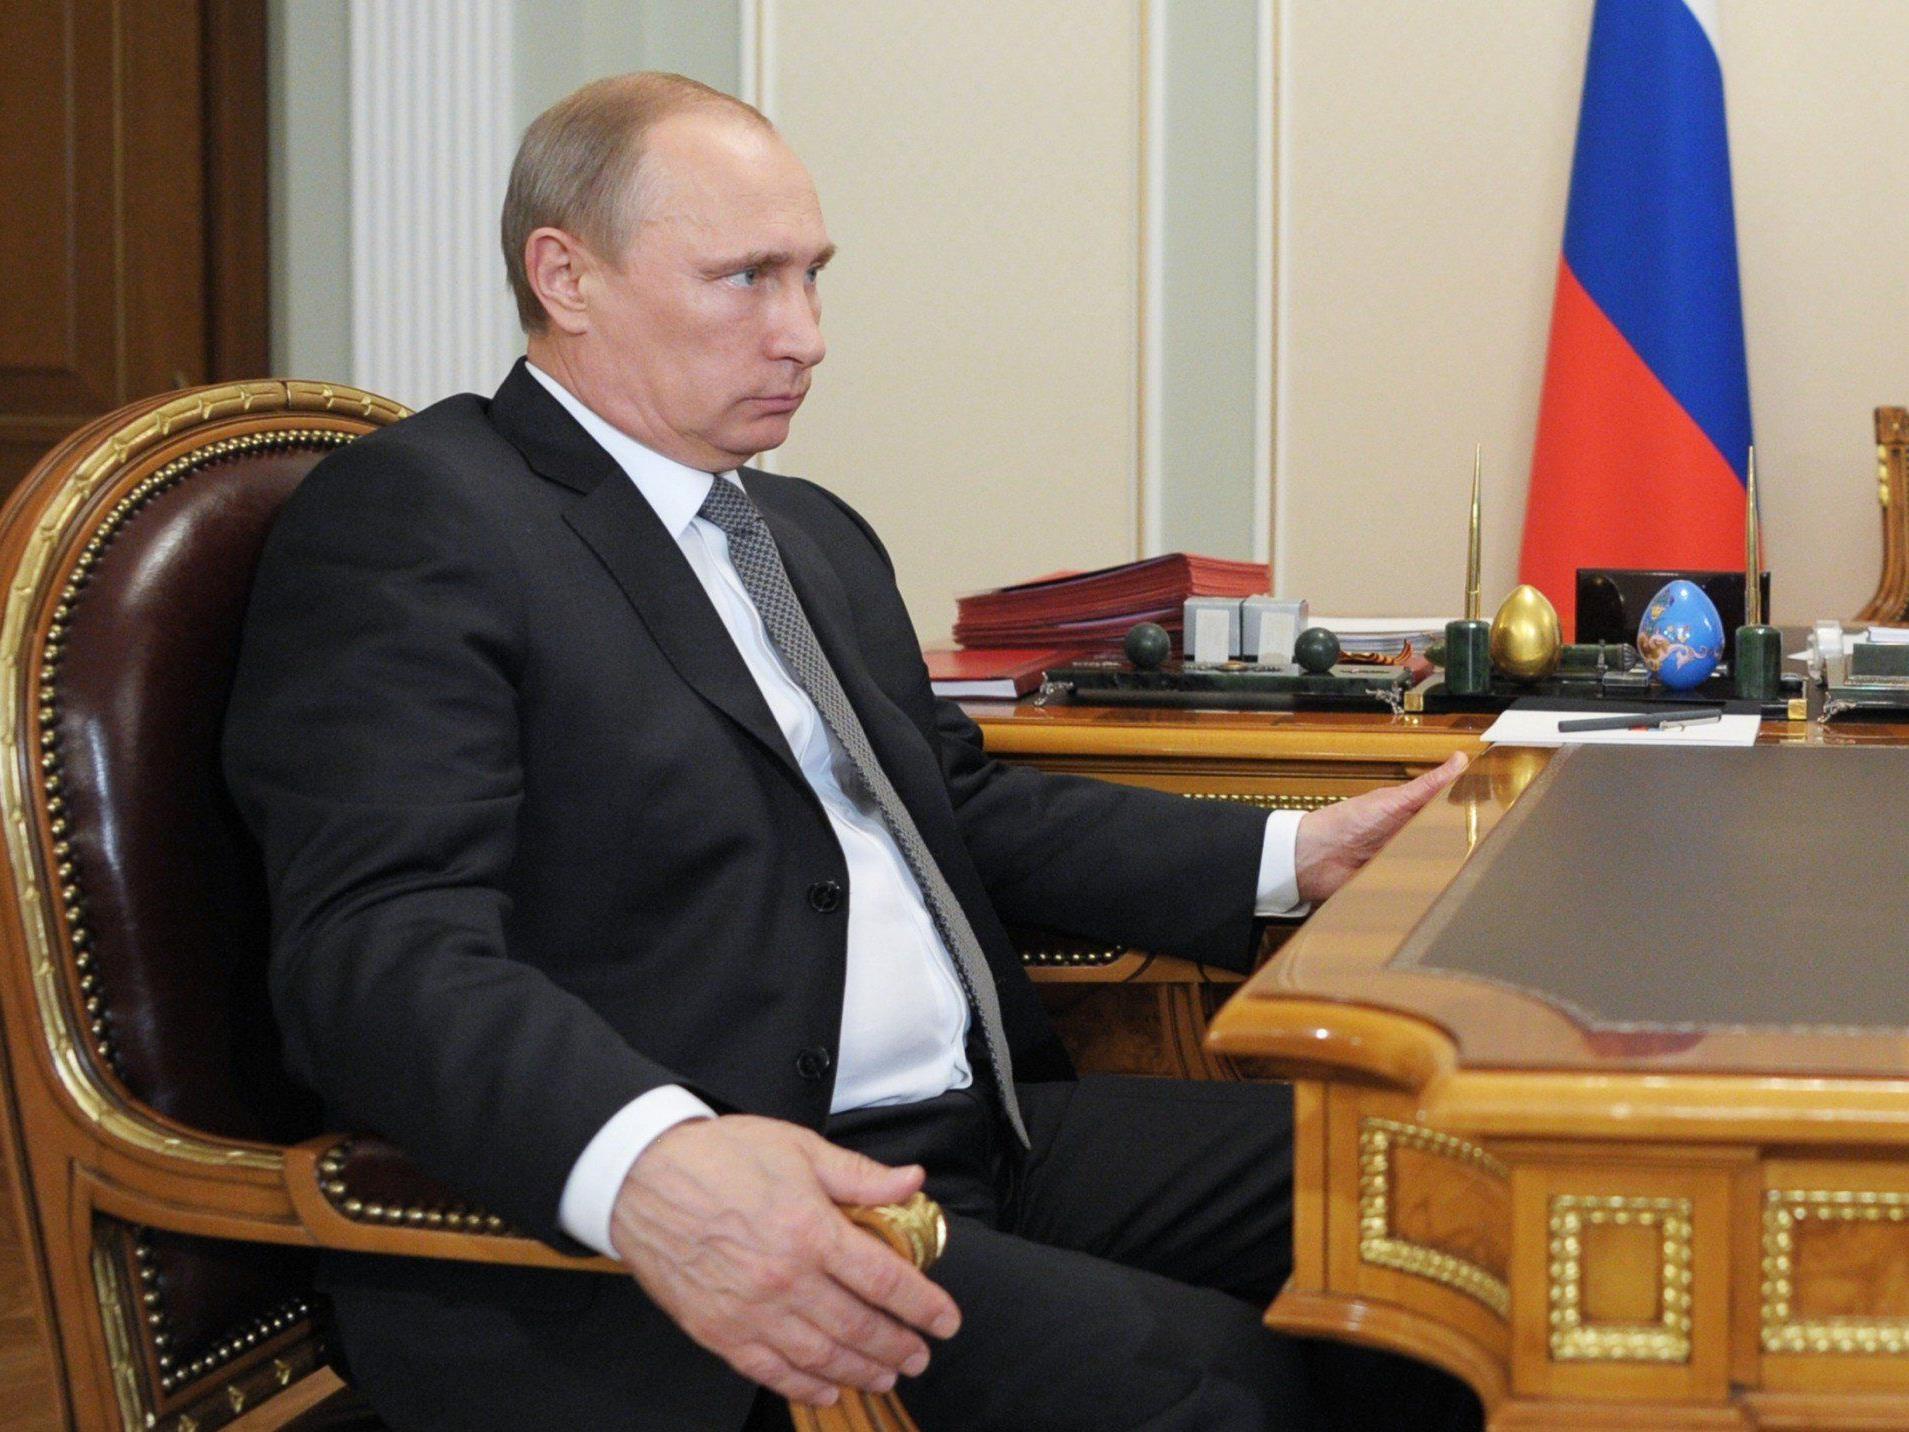 Kontakt der beiden Präsidenten nach Tod von zwei russischen Reportern in Ostukraine.